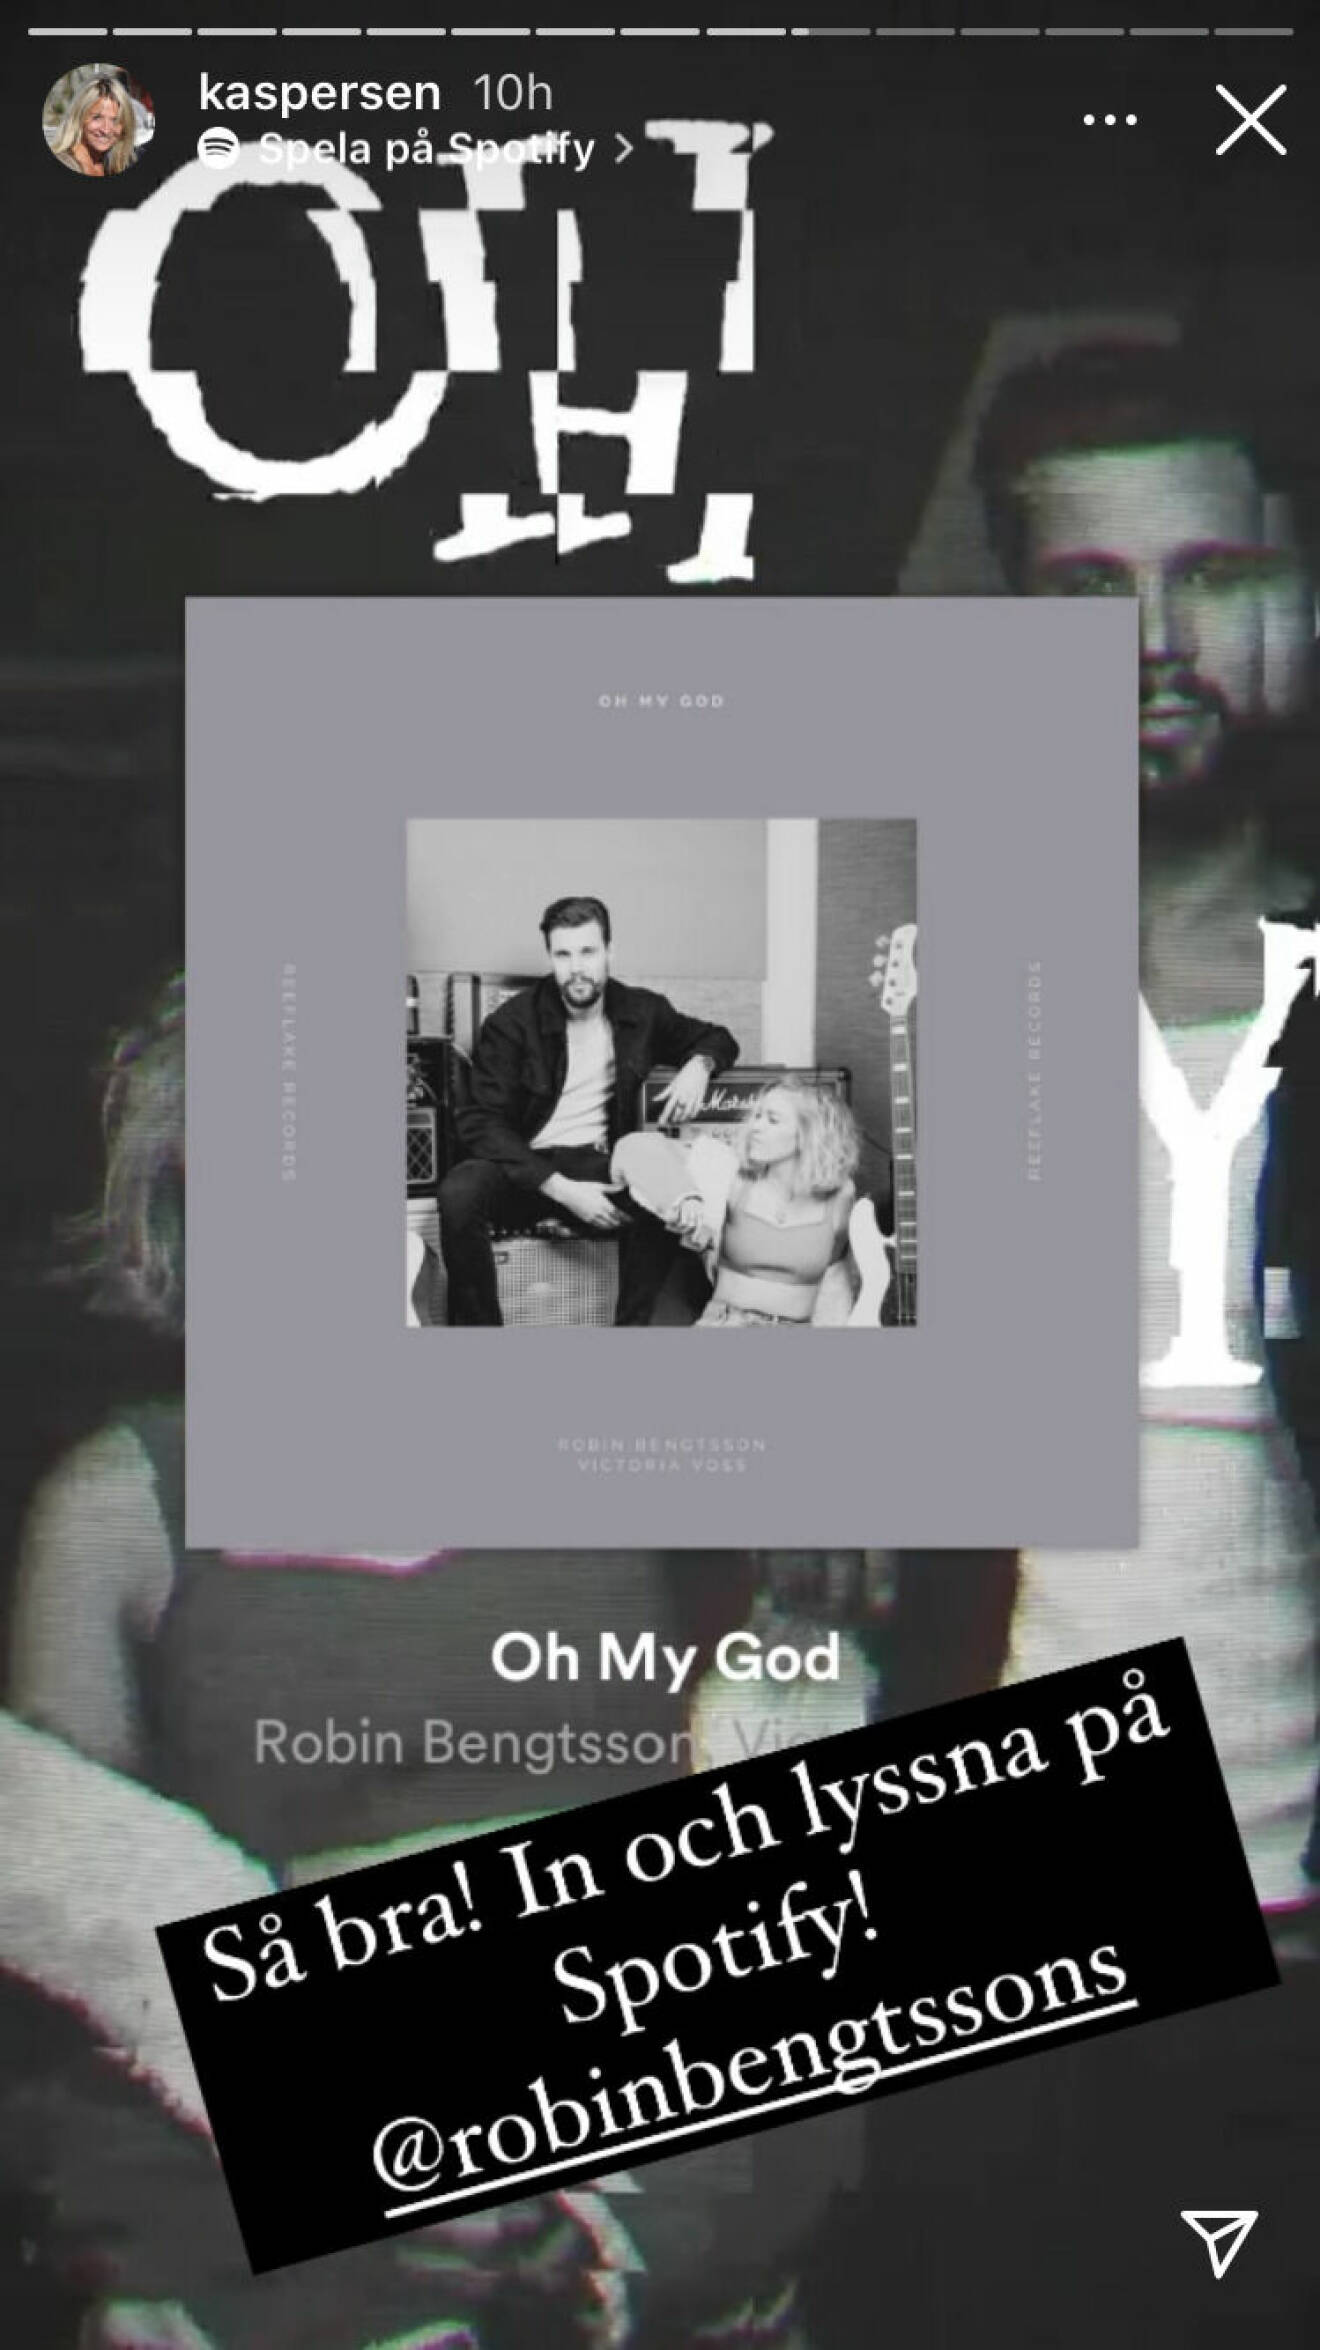 Kristin Kaspersens uppmaning till följarna att lyssna på Let's dance-kompisen Robin Bengtssons musik.